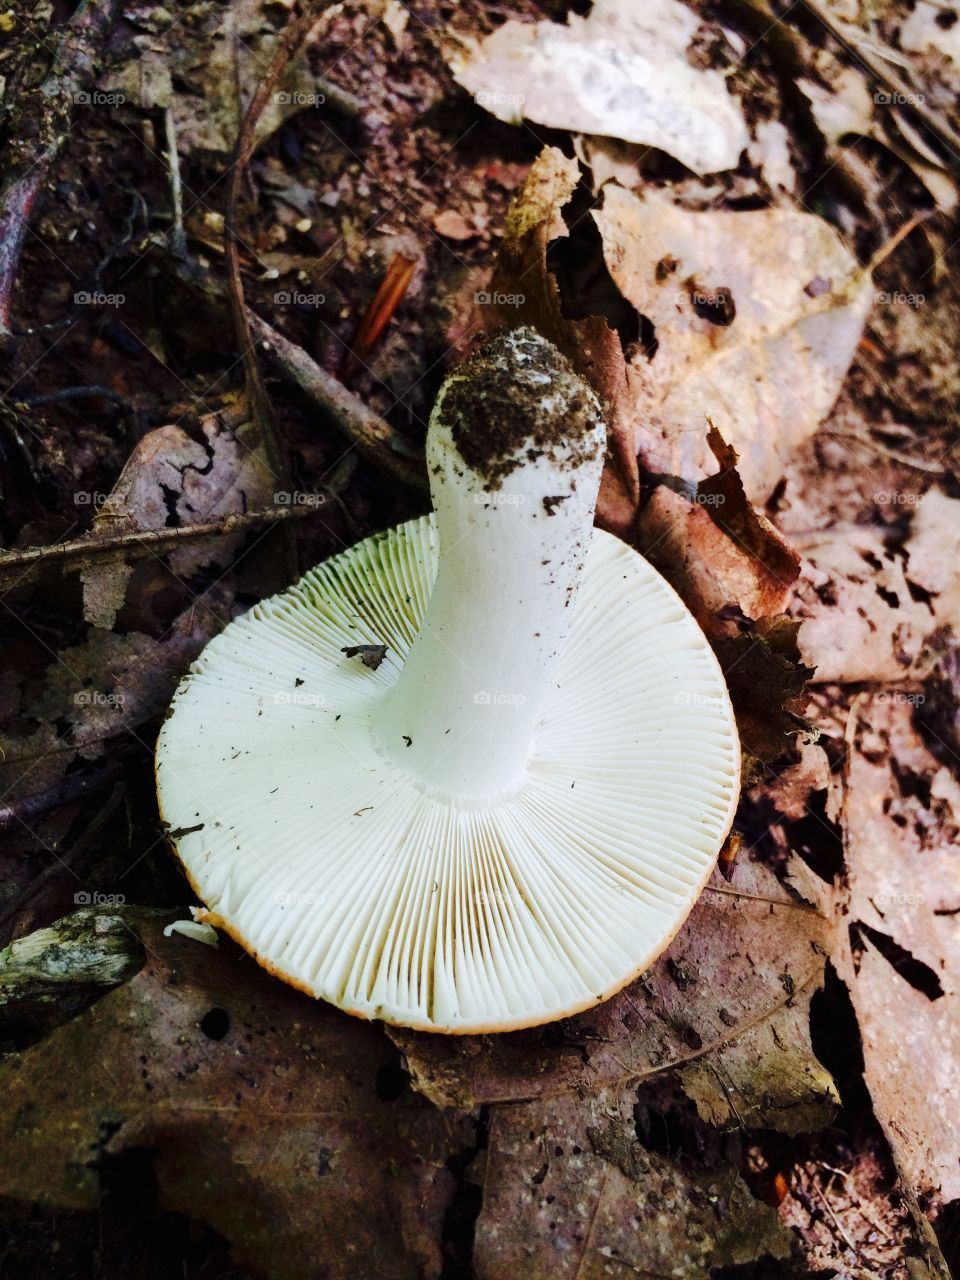 Upside down mushroom